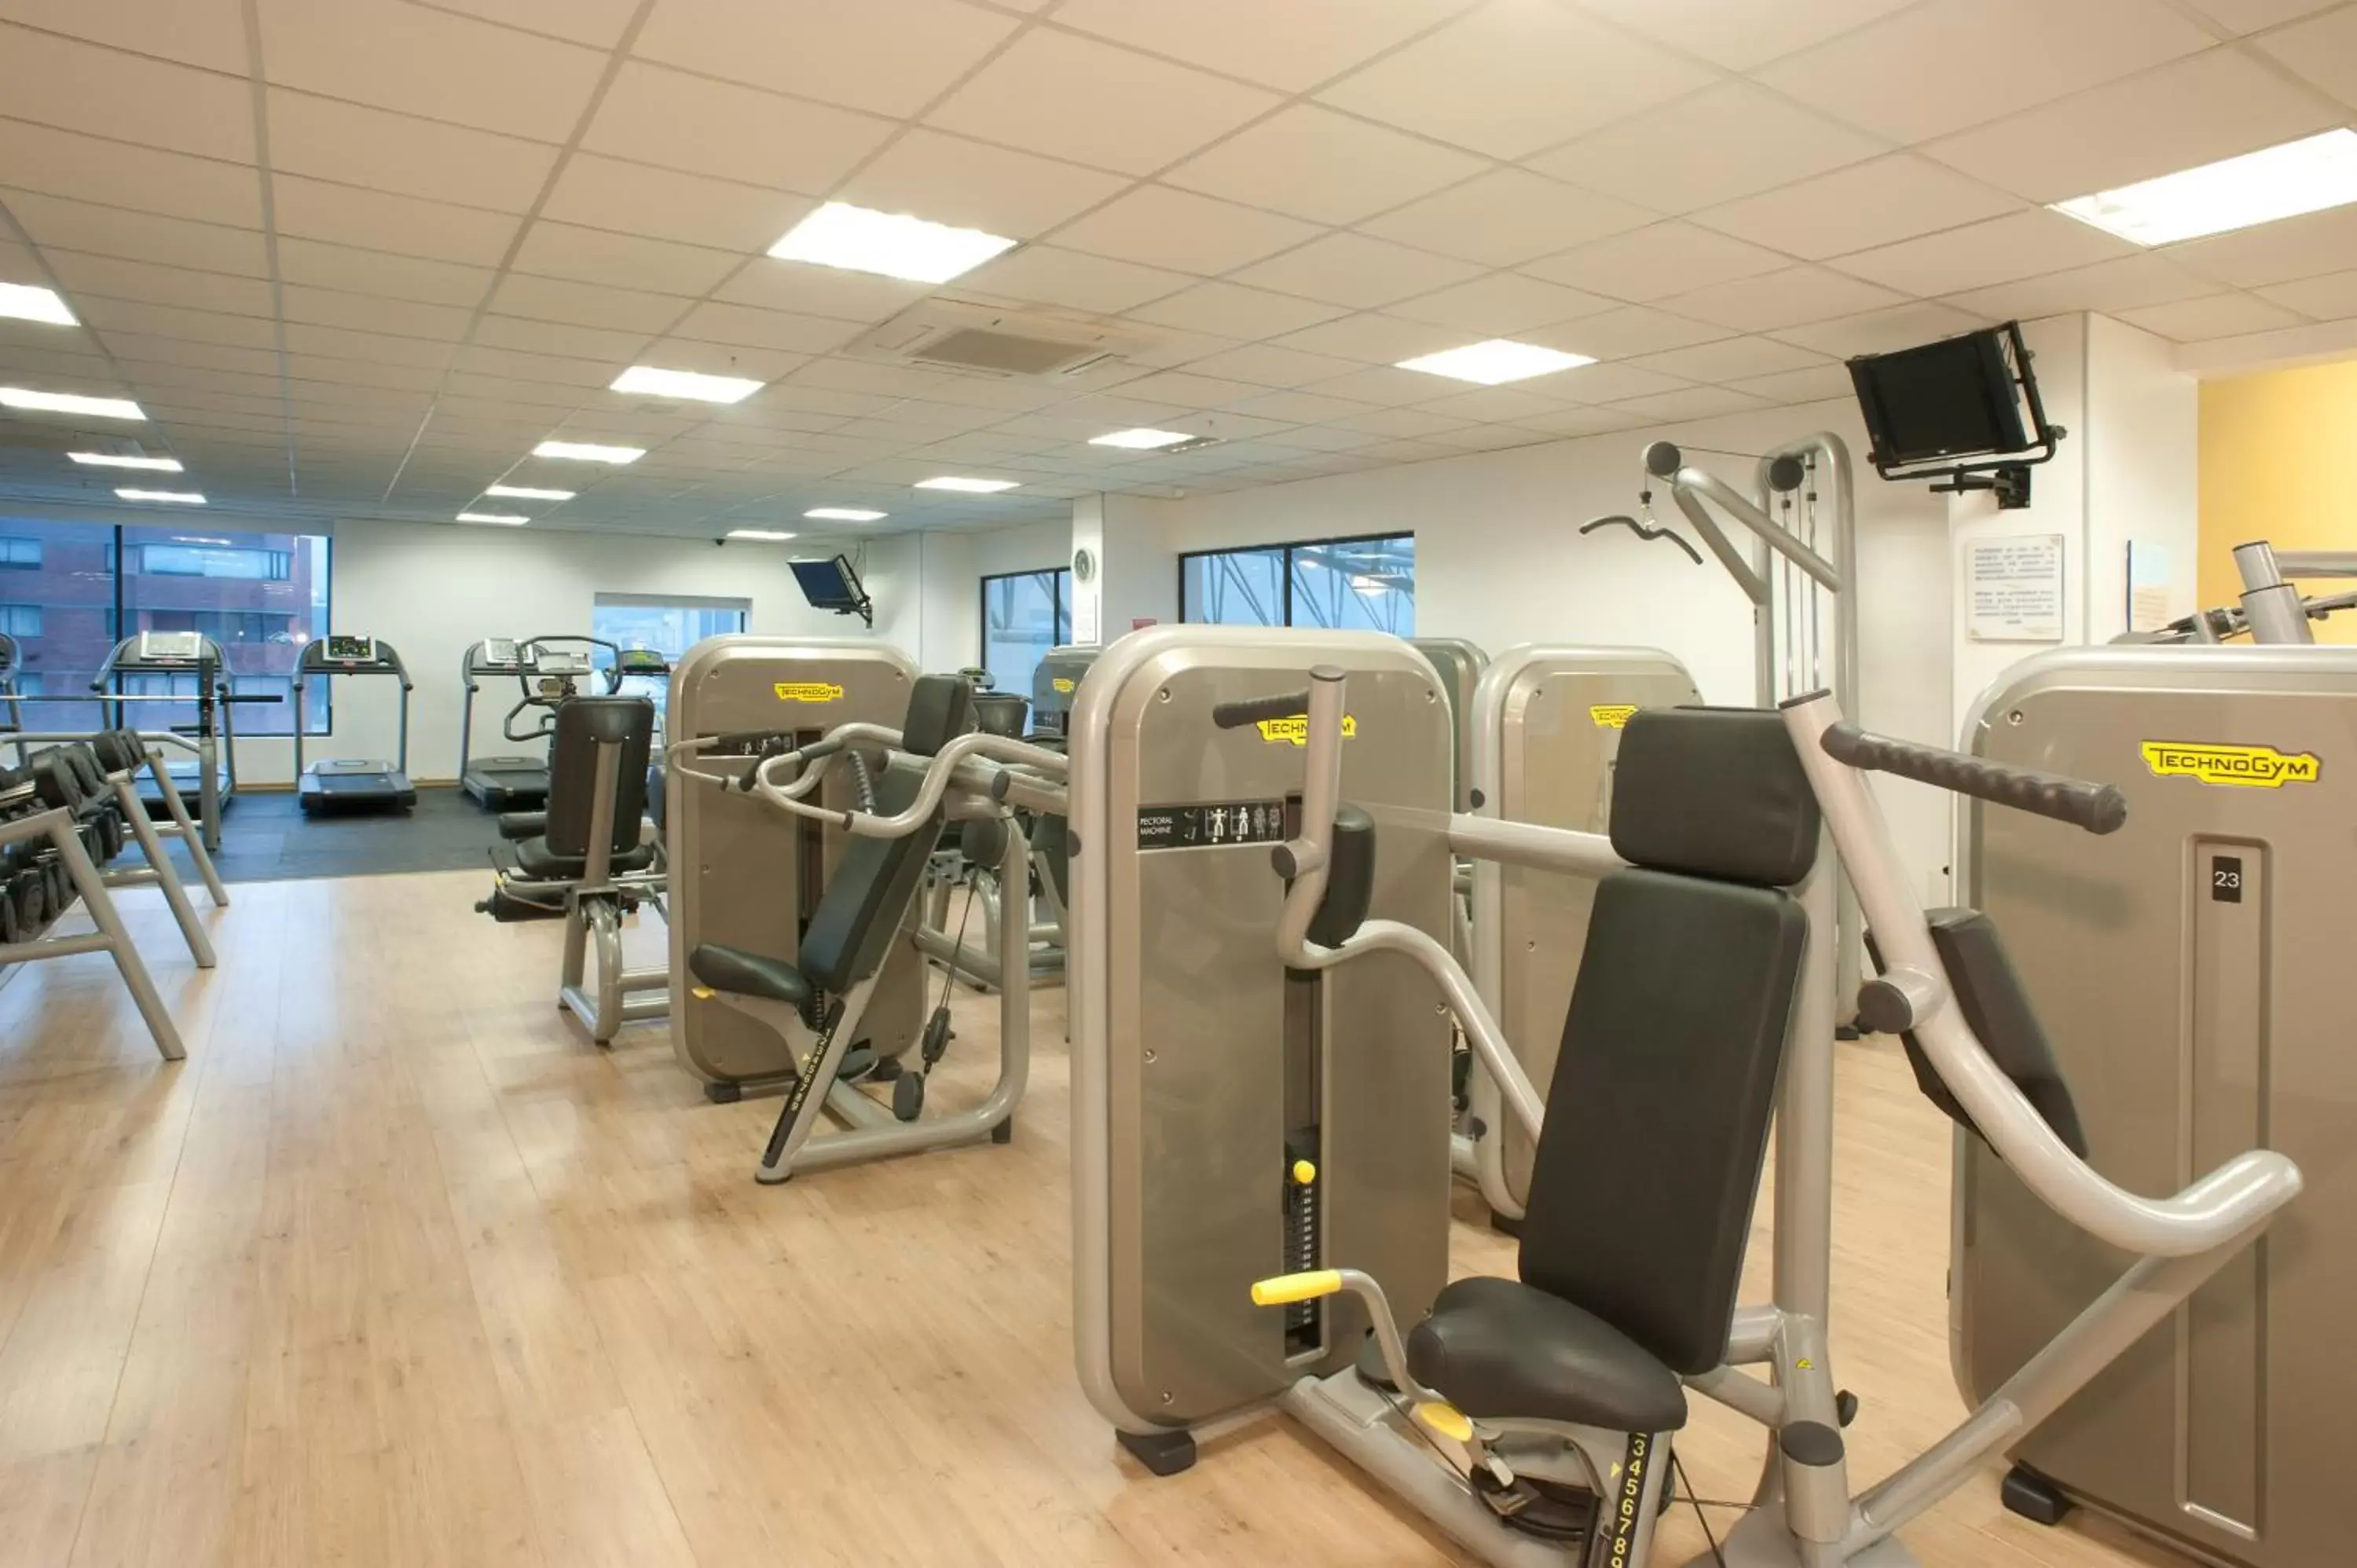 Fitness centre/facilities, Fitness Center/Facilities in Dann Carlton Quito